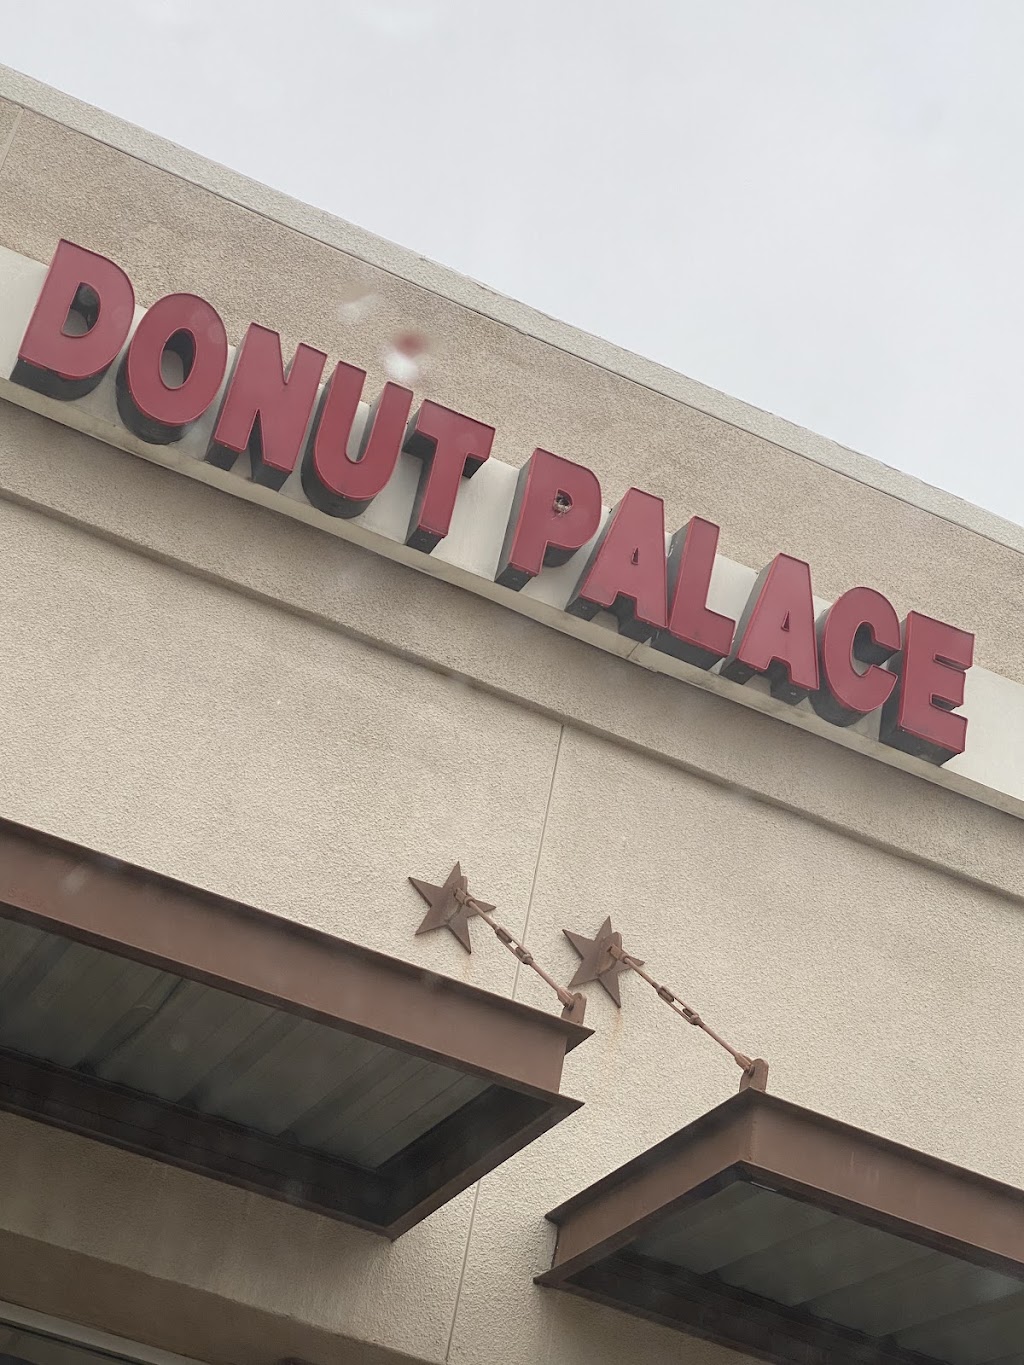 Donut Palace | 6805 Main St #415, The Colony, TX 75056, USA | Phone: (214) 469-1616